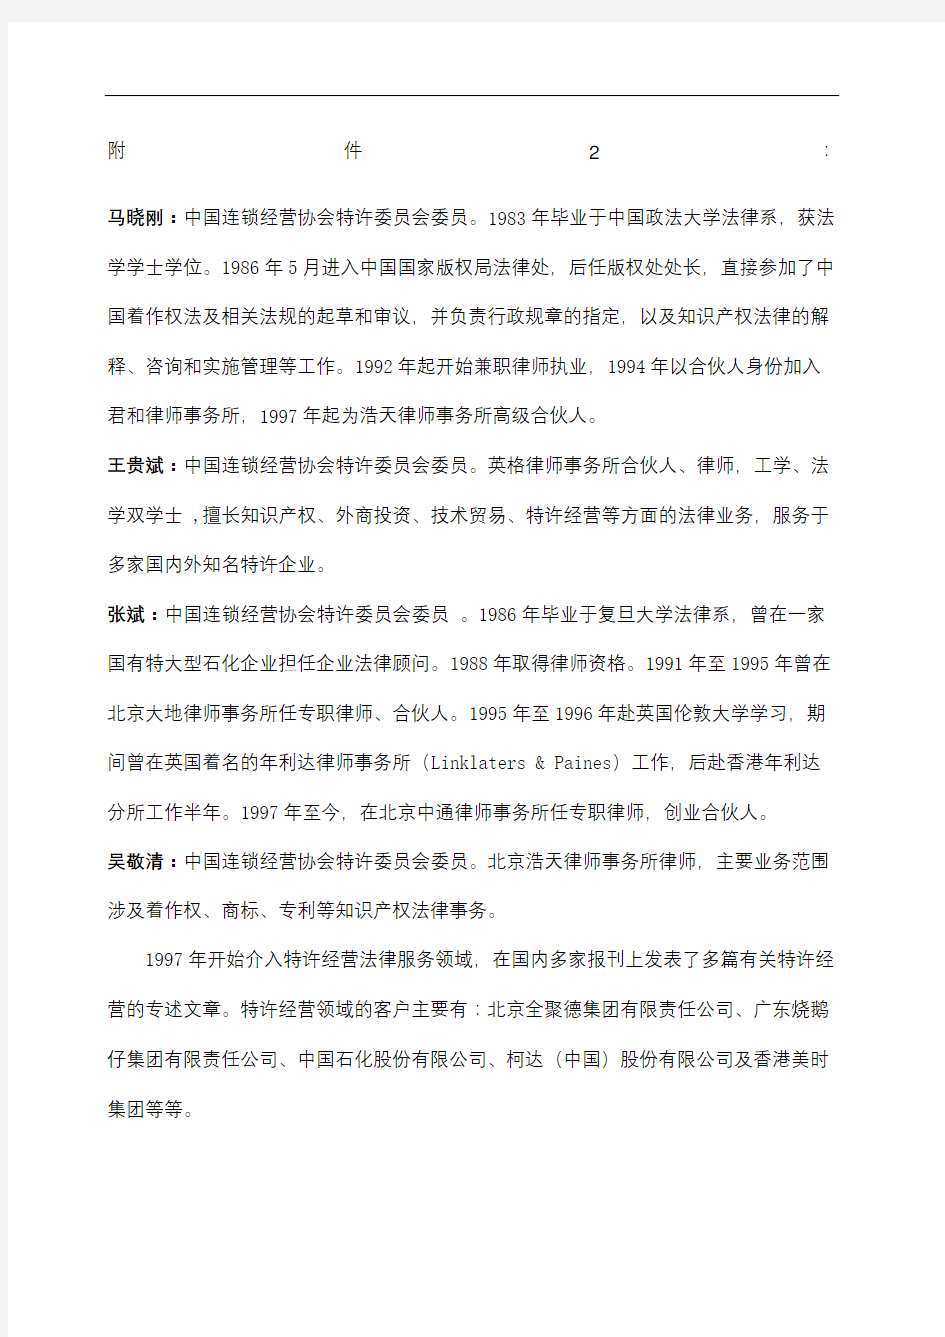 王贵斌连锁经营协会特许委员会委员英格律师事务所